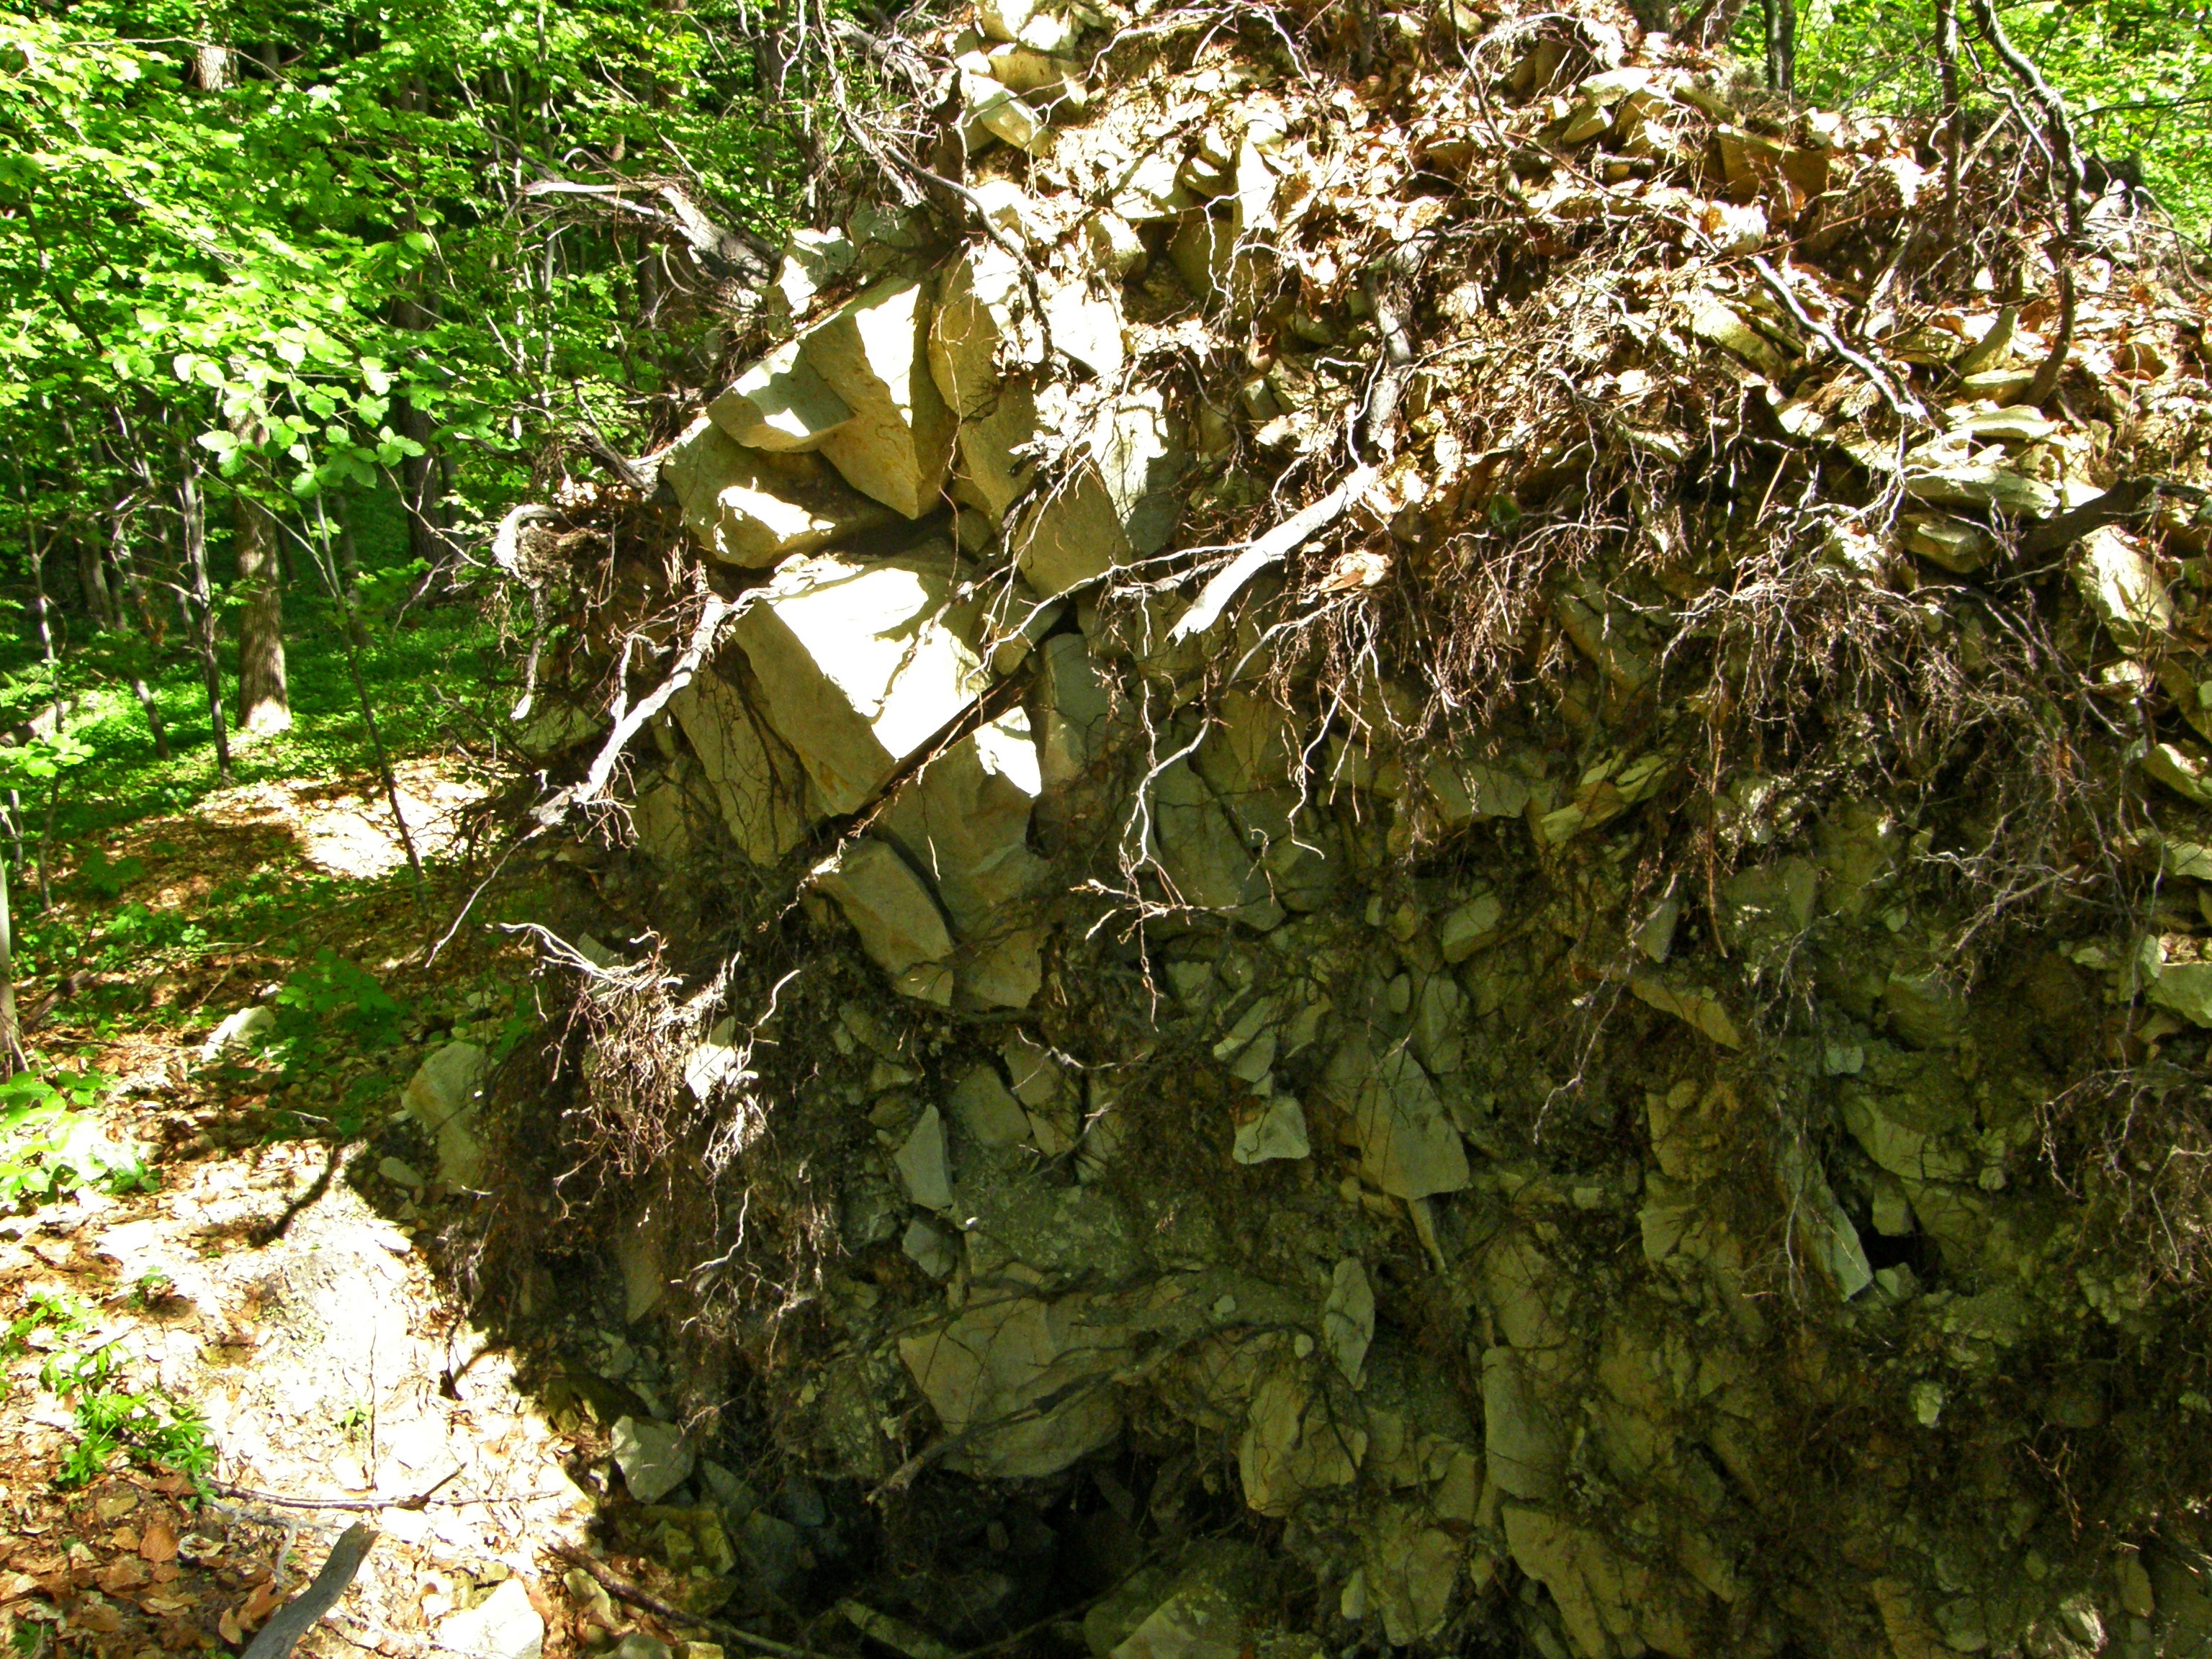 Fot. 2. Kredowa skała macierzysta i płytka rędzina w bryle korzeniowej wywróconego buka.